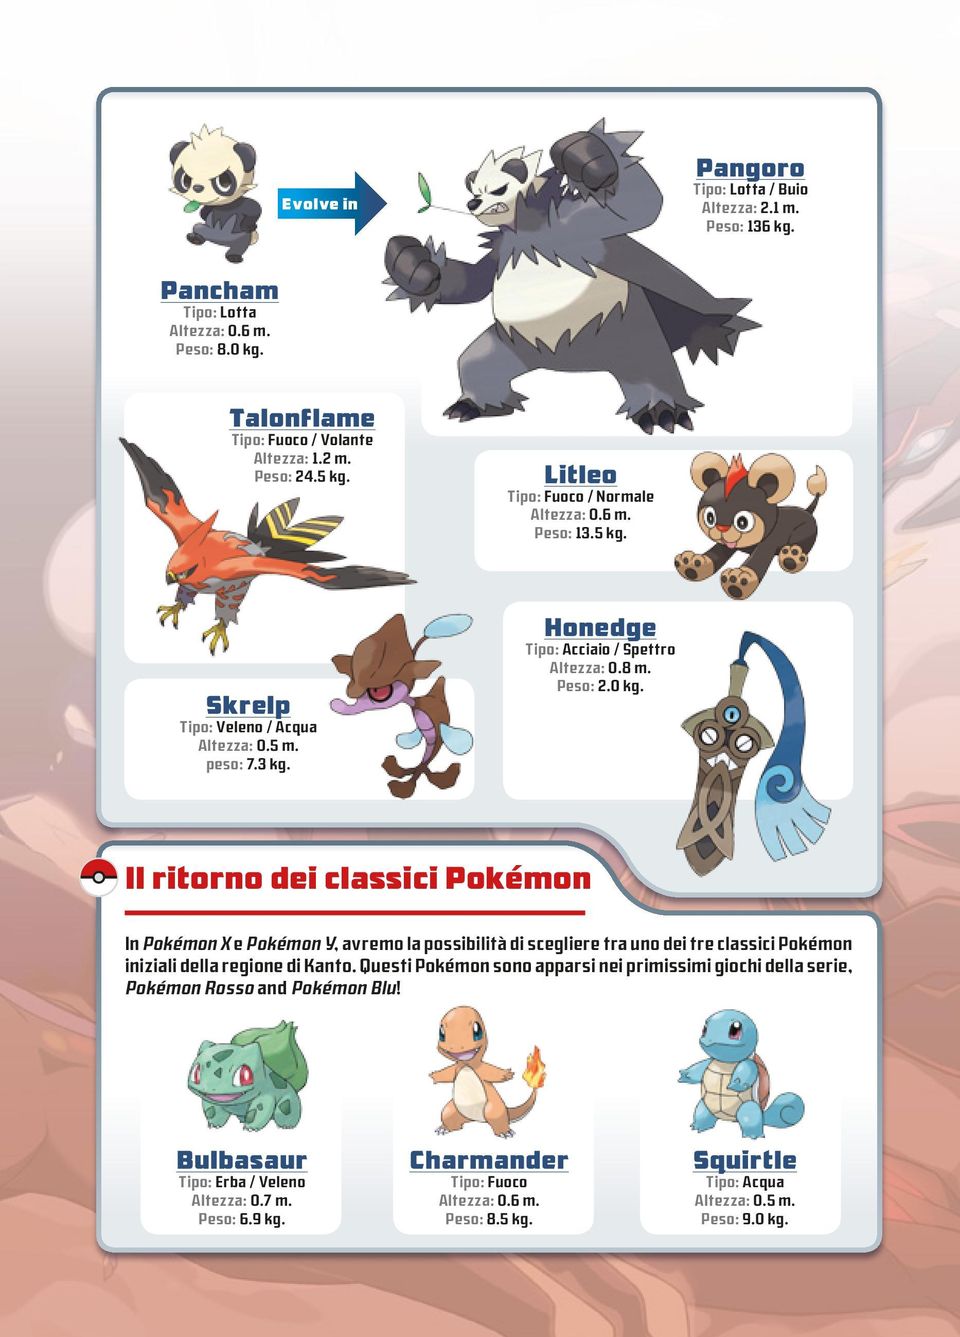 Il ritorno dei classici Pokémon In Pokémon X e Pokémon Y, avremo la possibilità di scegliere tra uno dei tre classici Pokémon iniziali della regione di Kanto.